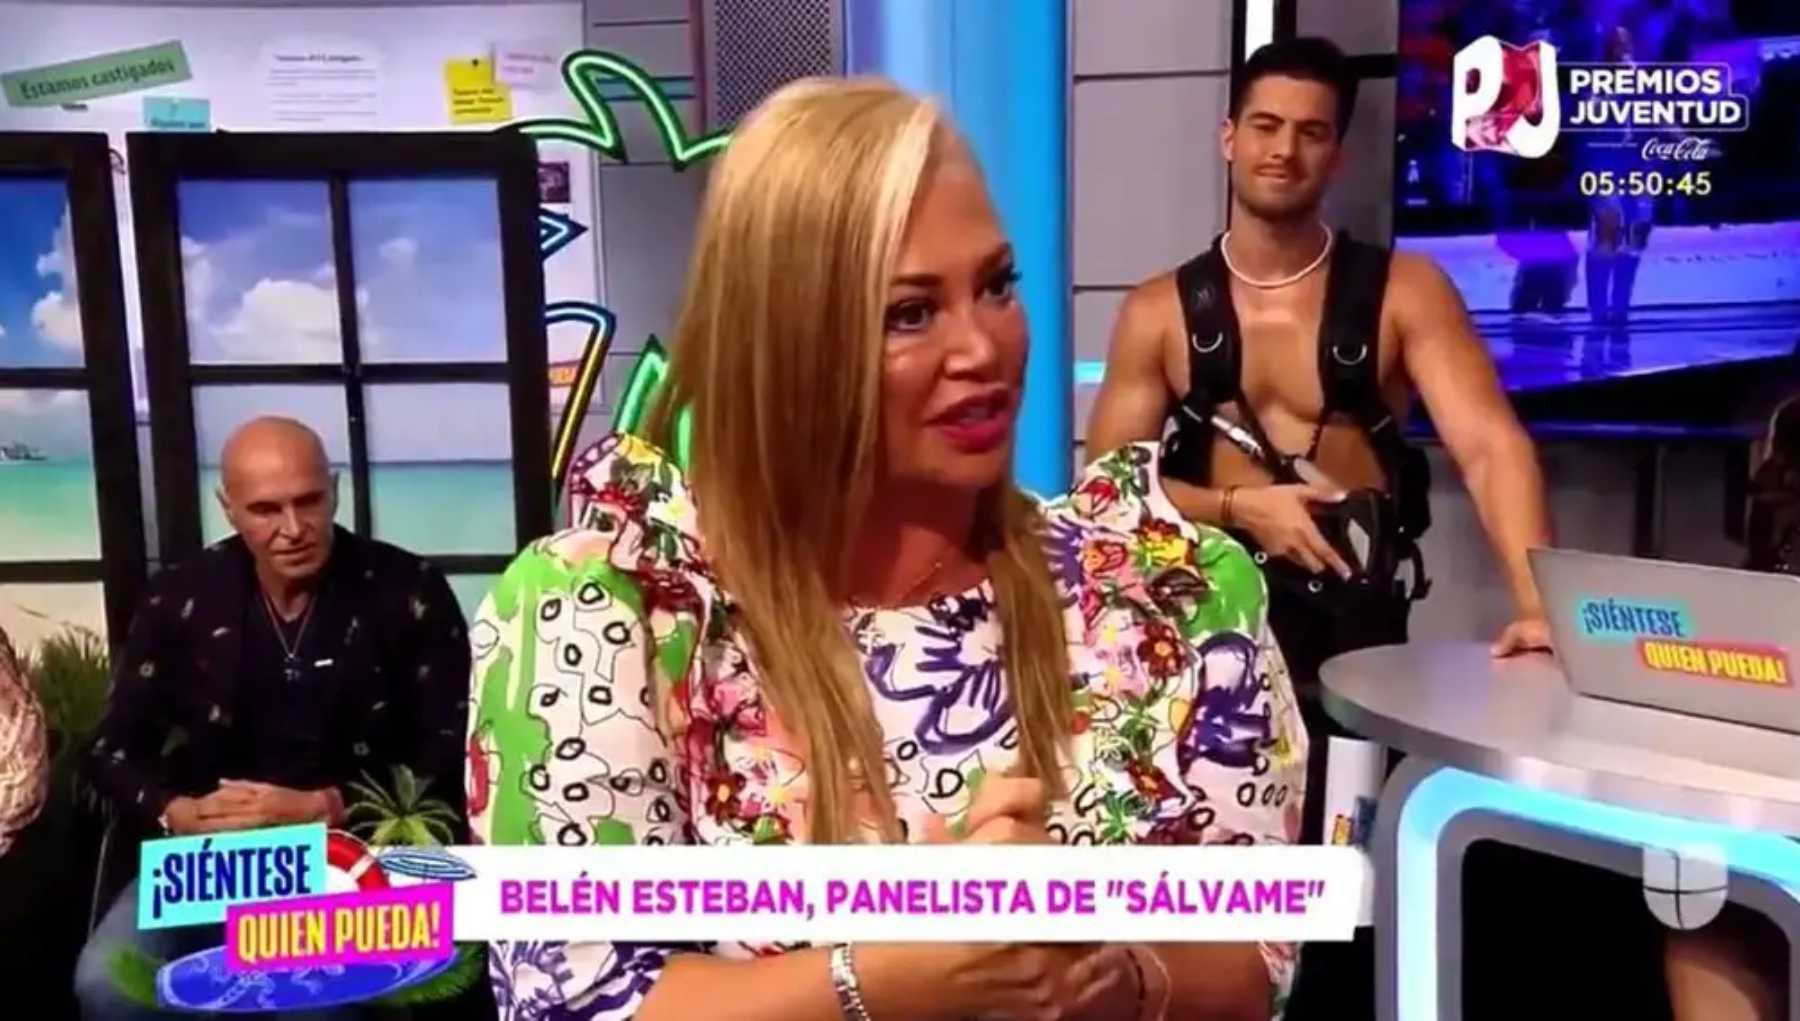 Belén Esteban en un plató de televisión en Miami / Univisión